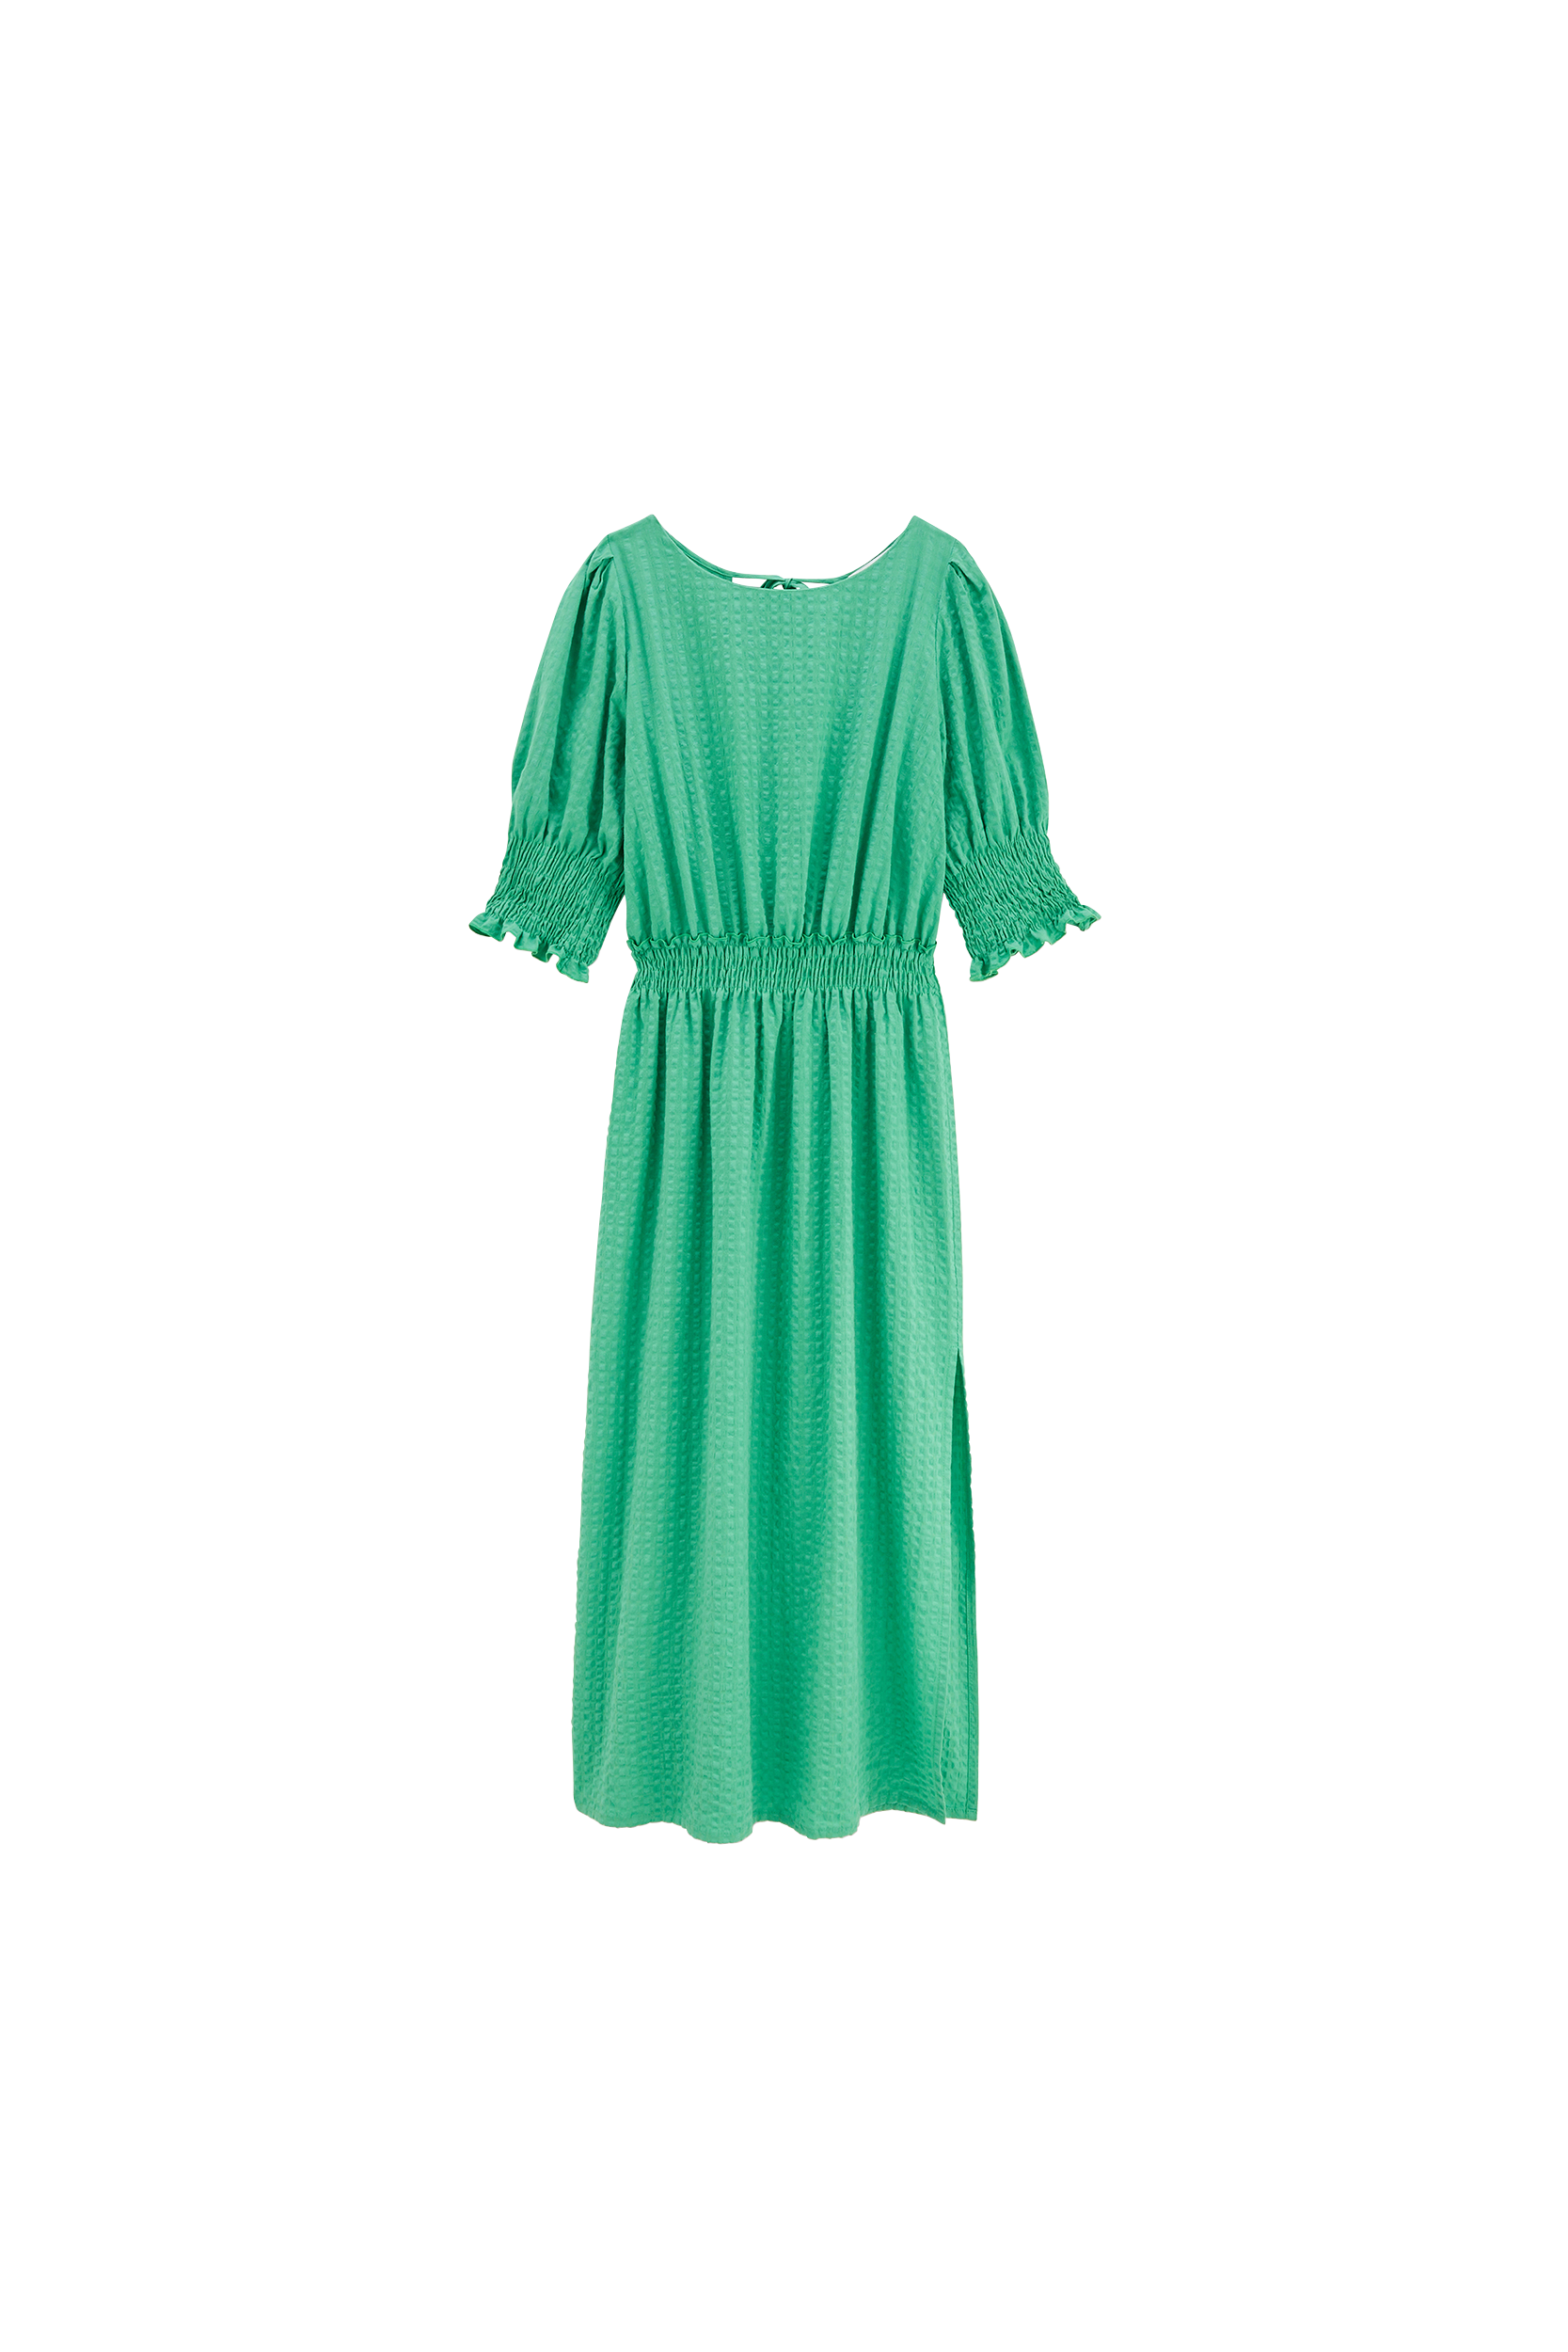 Lawn green Celeste dress